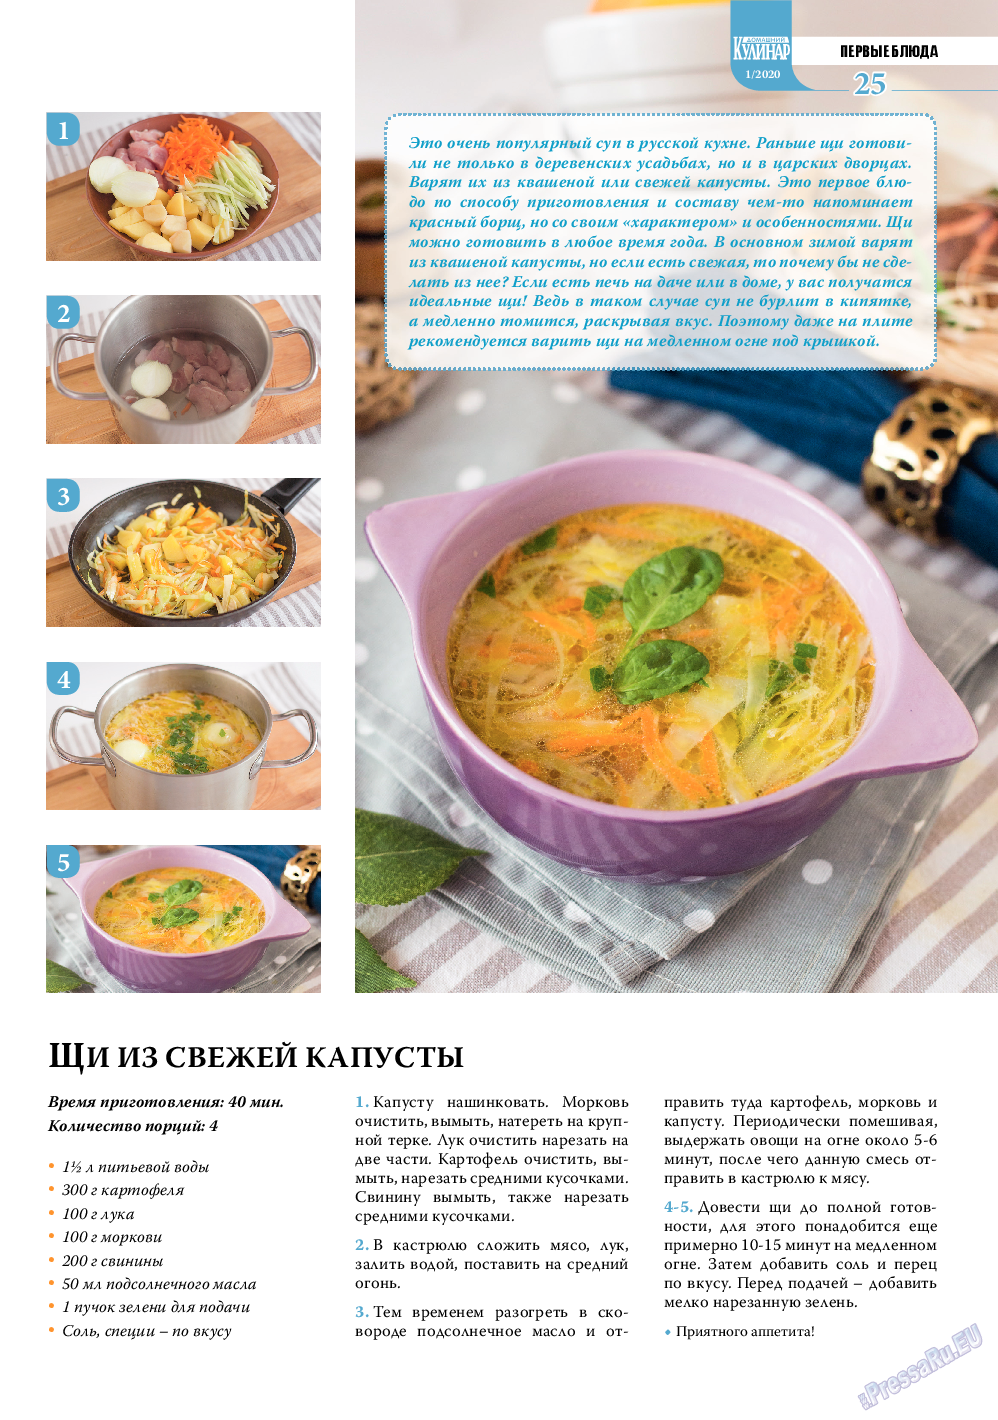 Домашний кулинар, журнал. 2020 №1 стр.25